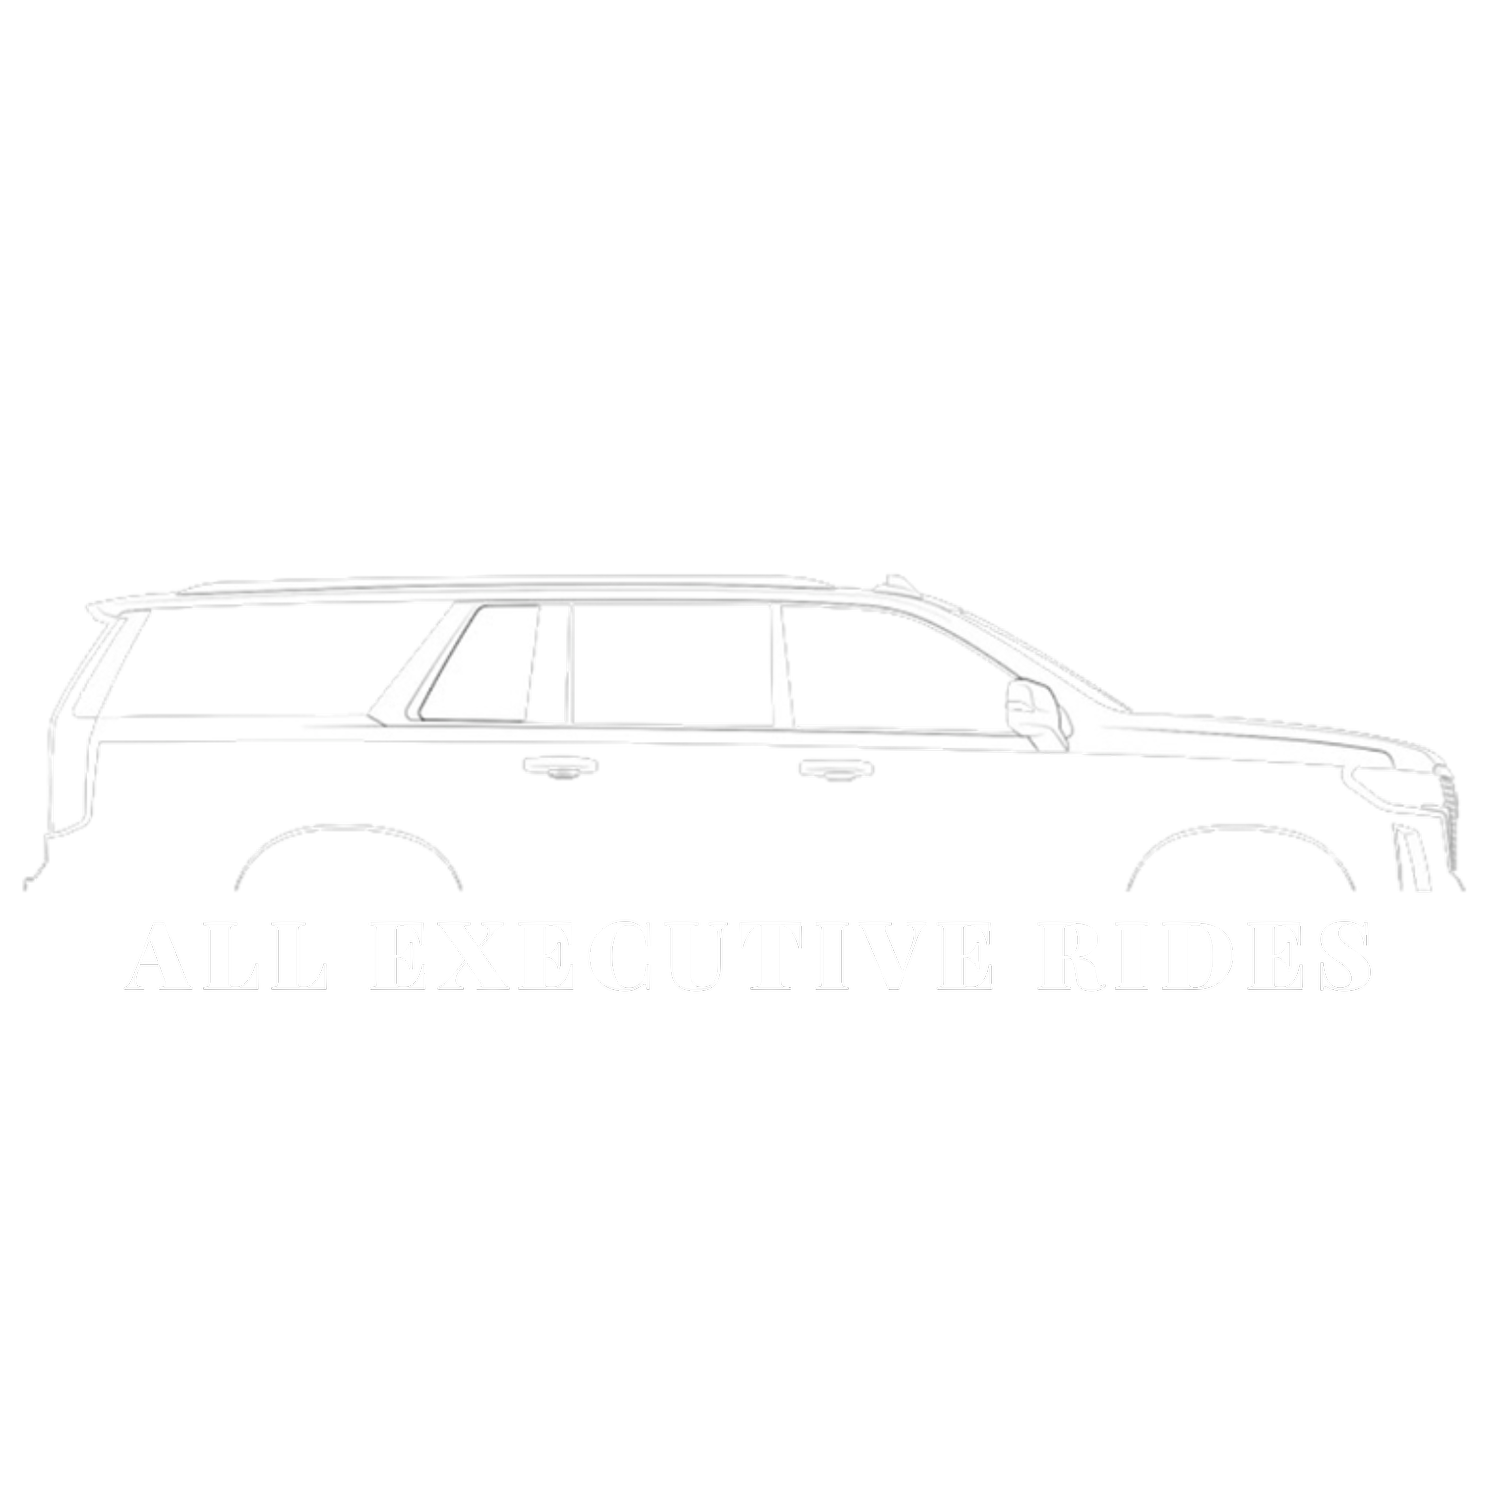 All Executive Rides